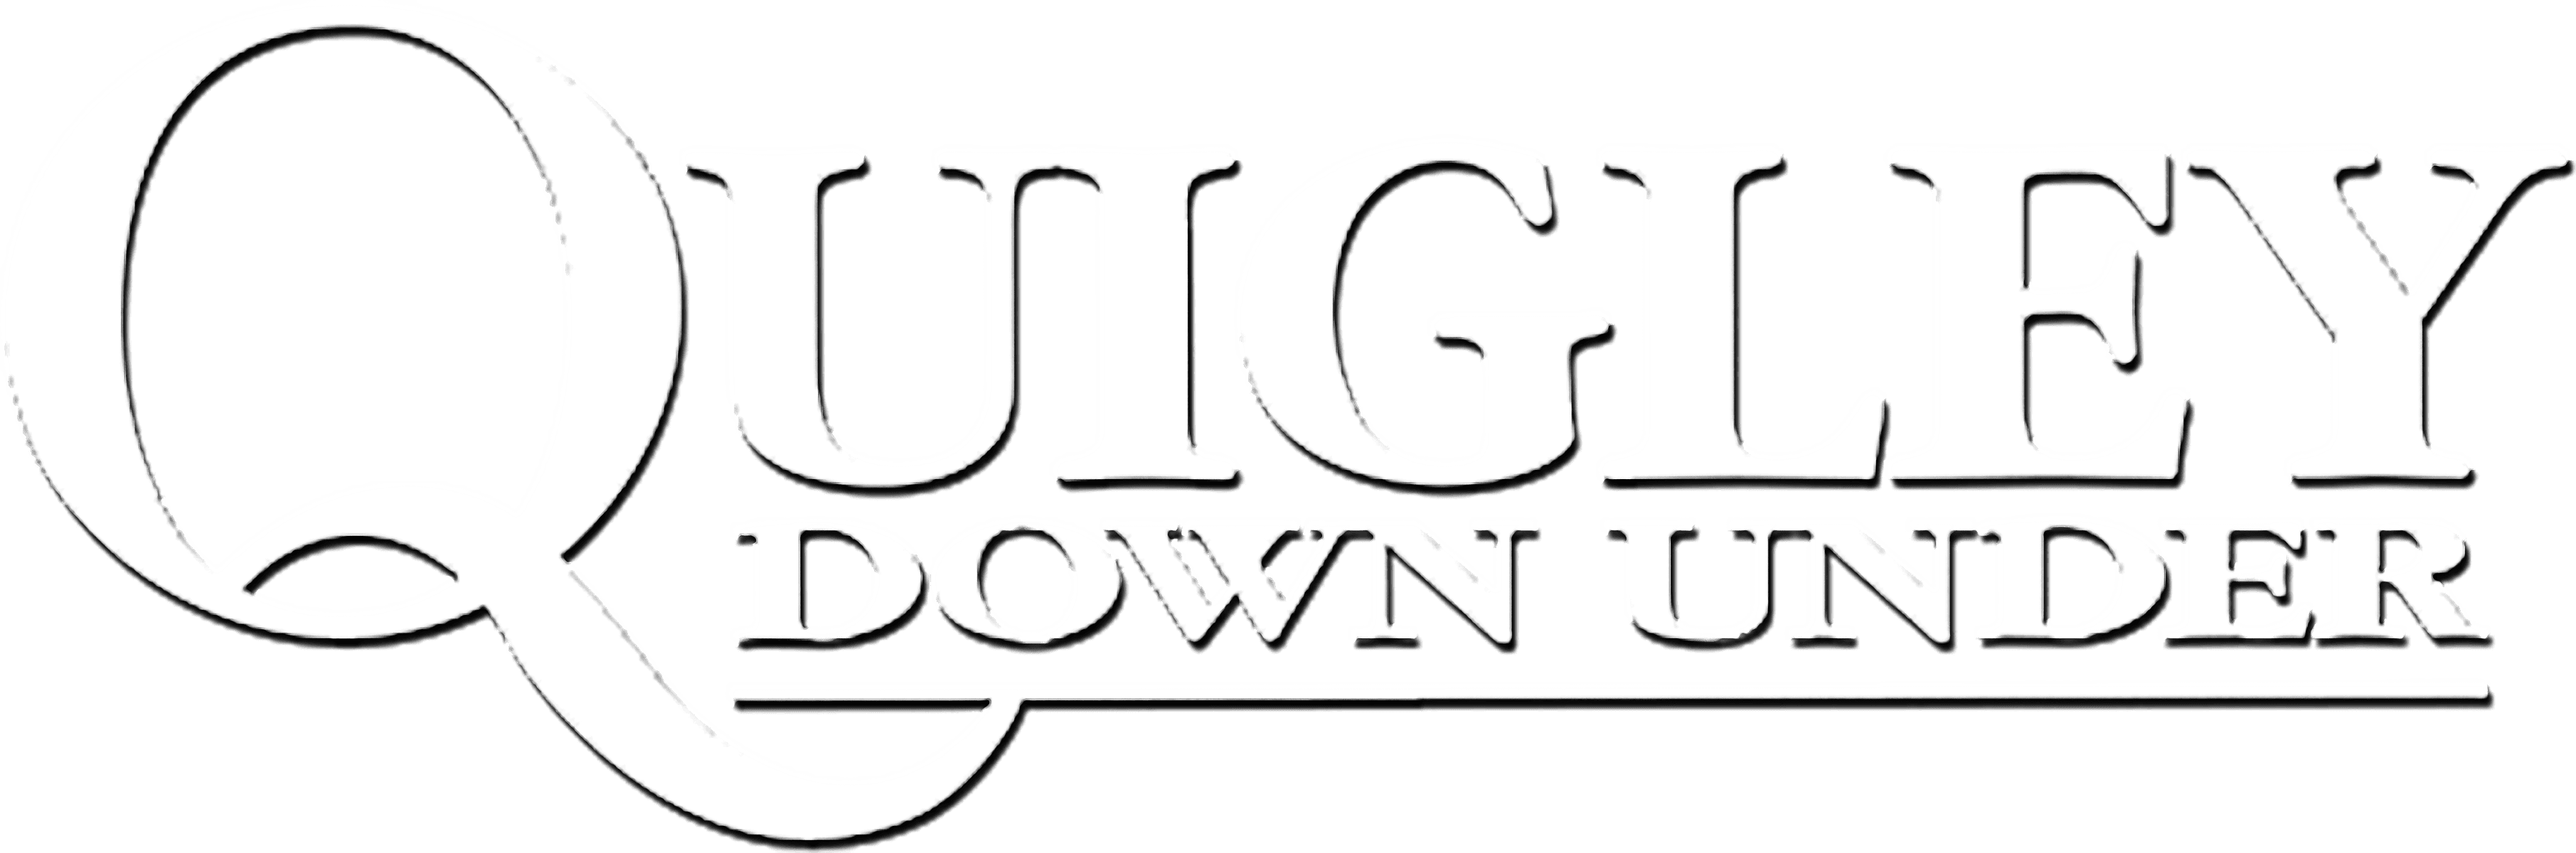 Quigley Down Under logo